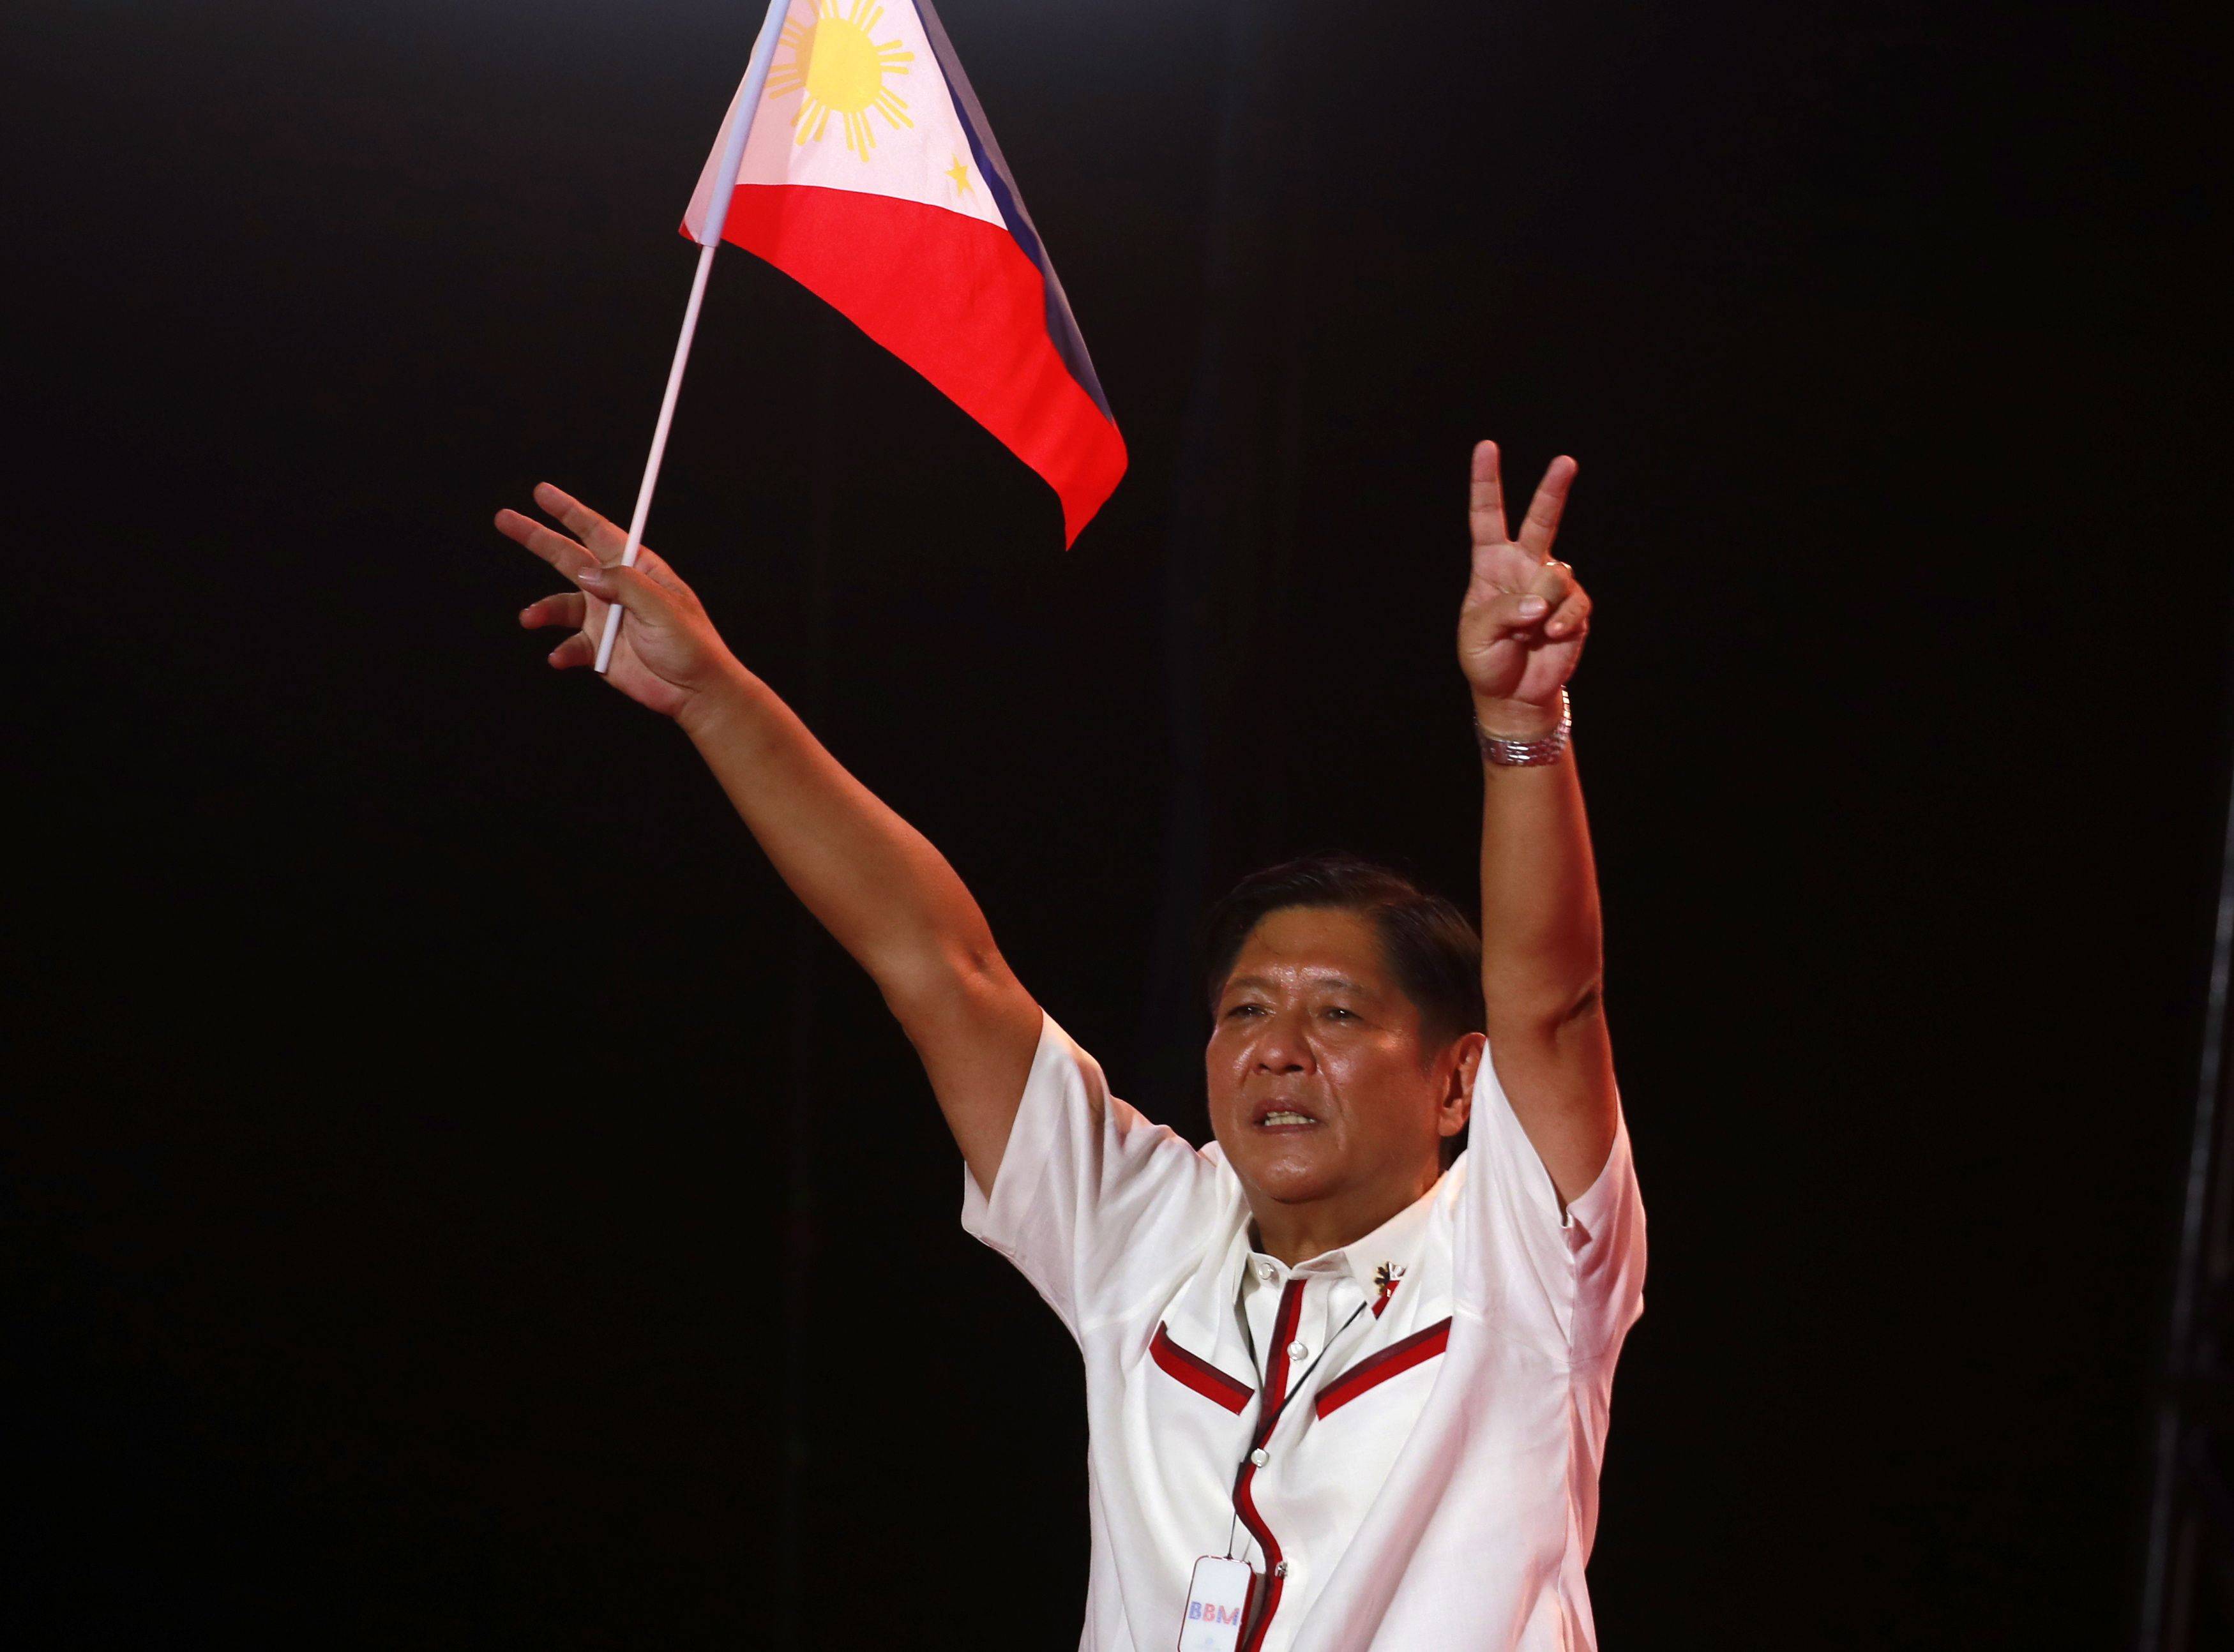 初步结果显示小马科斯赢得菲律宾总统选举